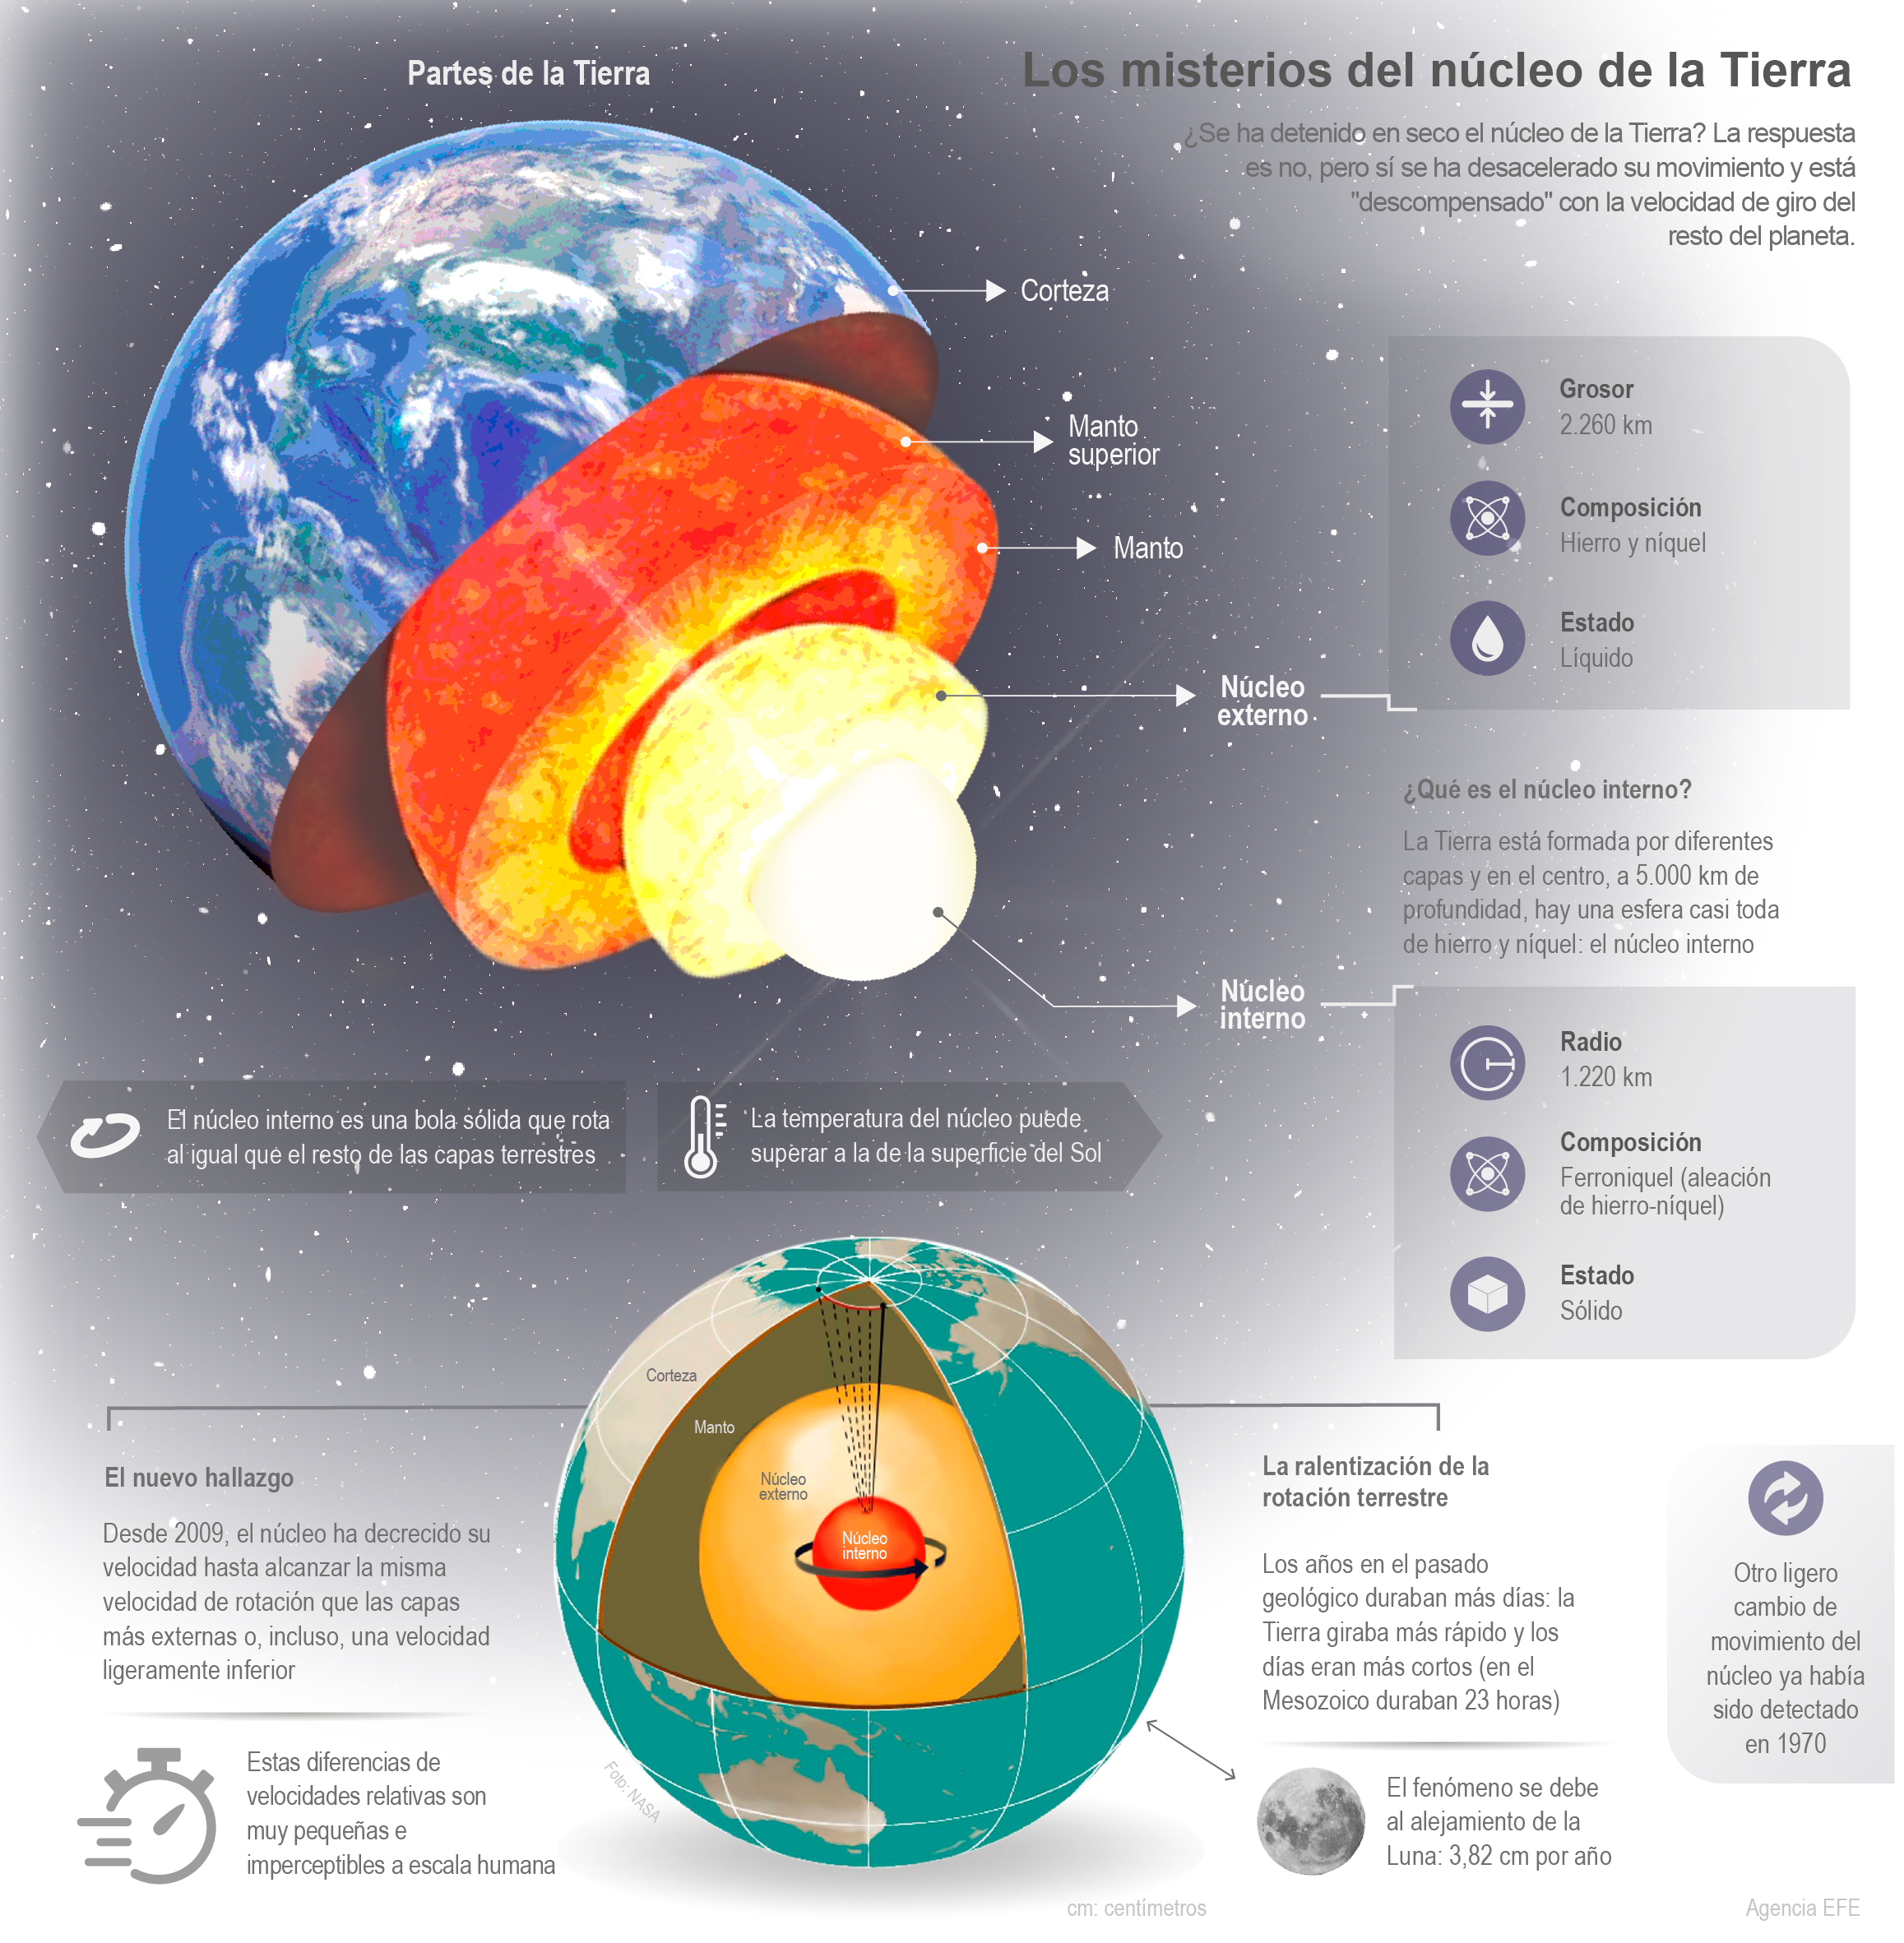 Los misterios del núcleo de la Tierra